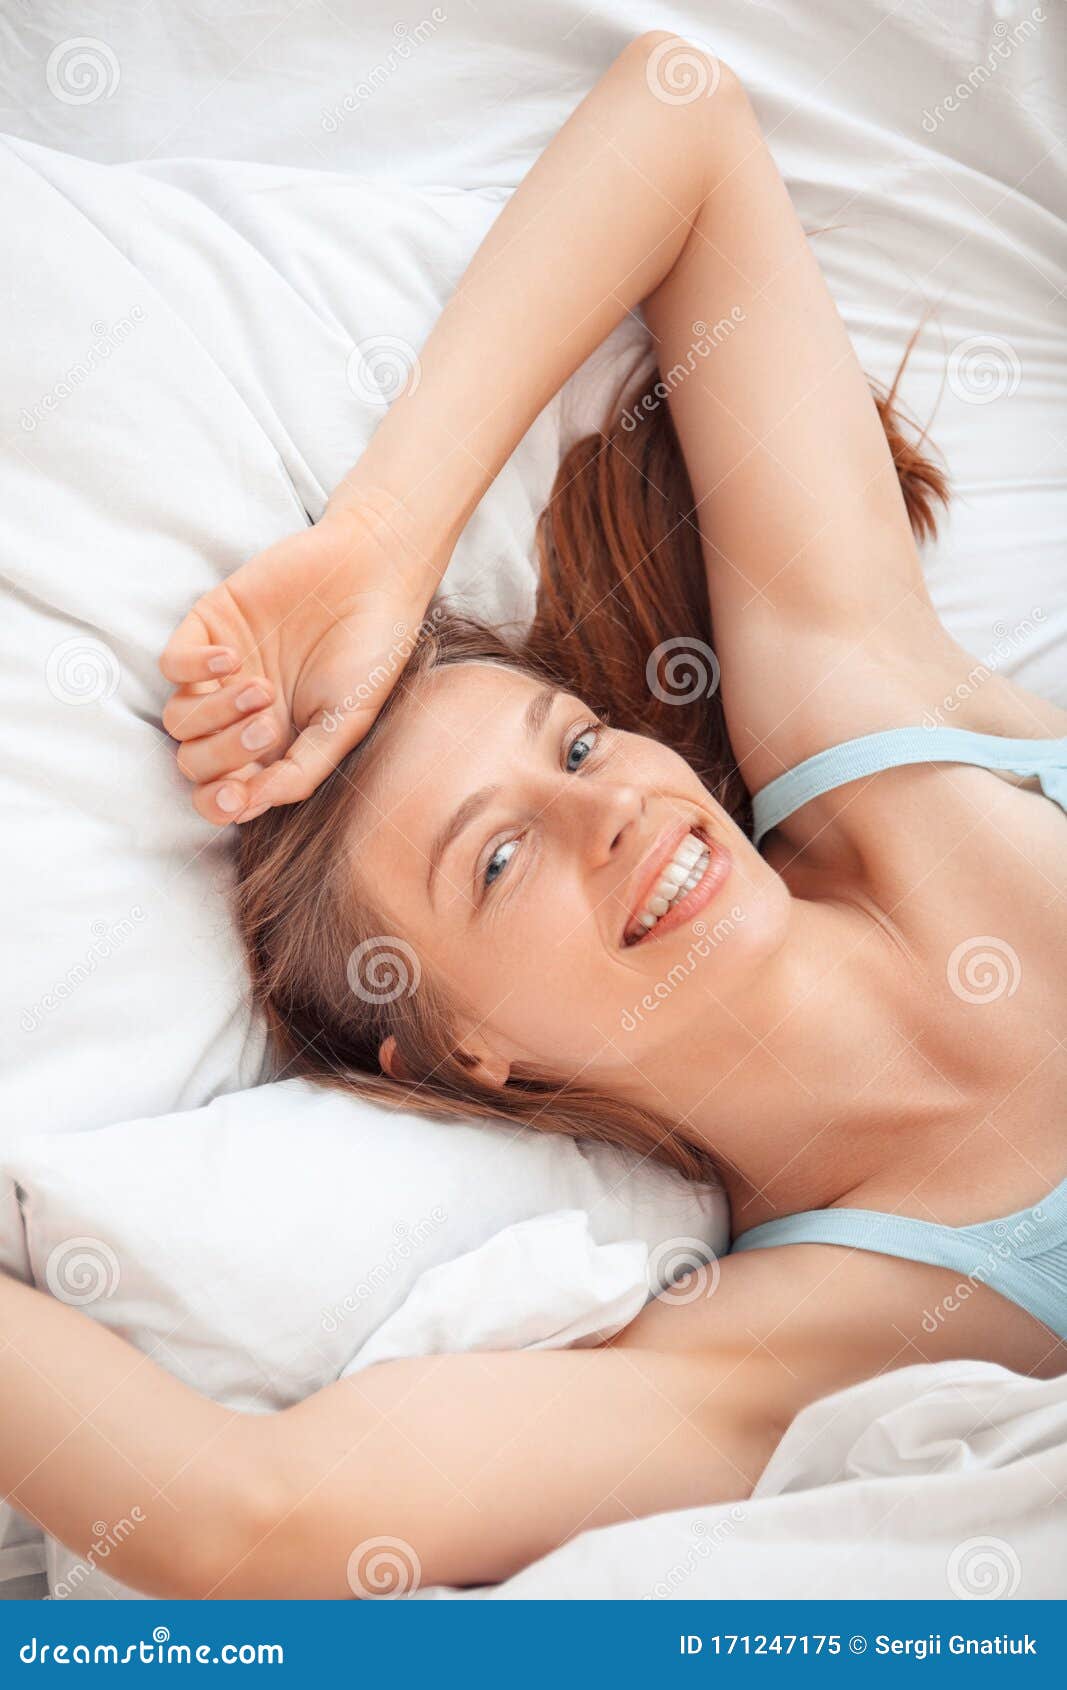 women in bed selfie xxx gallery pic